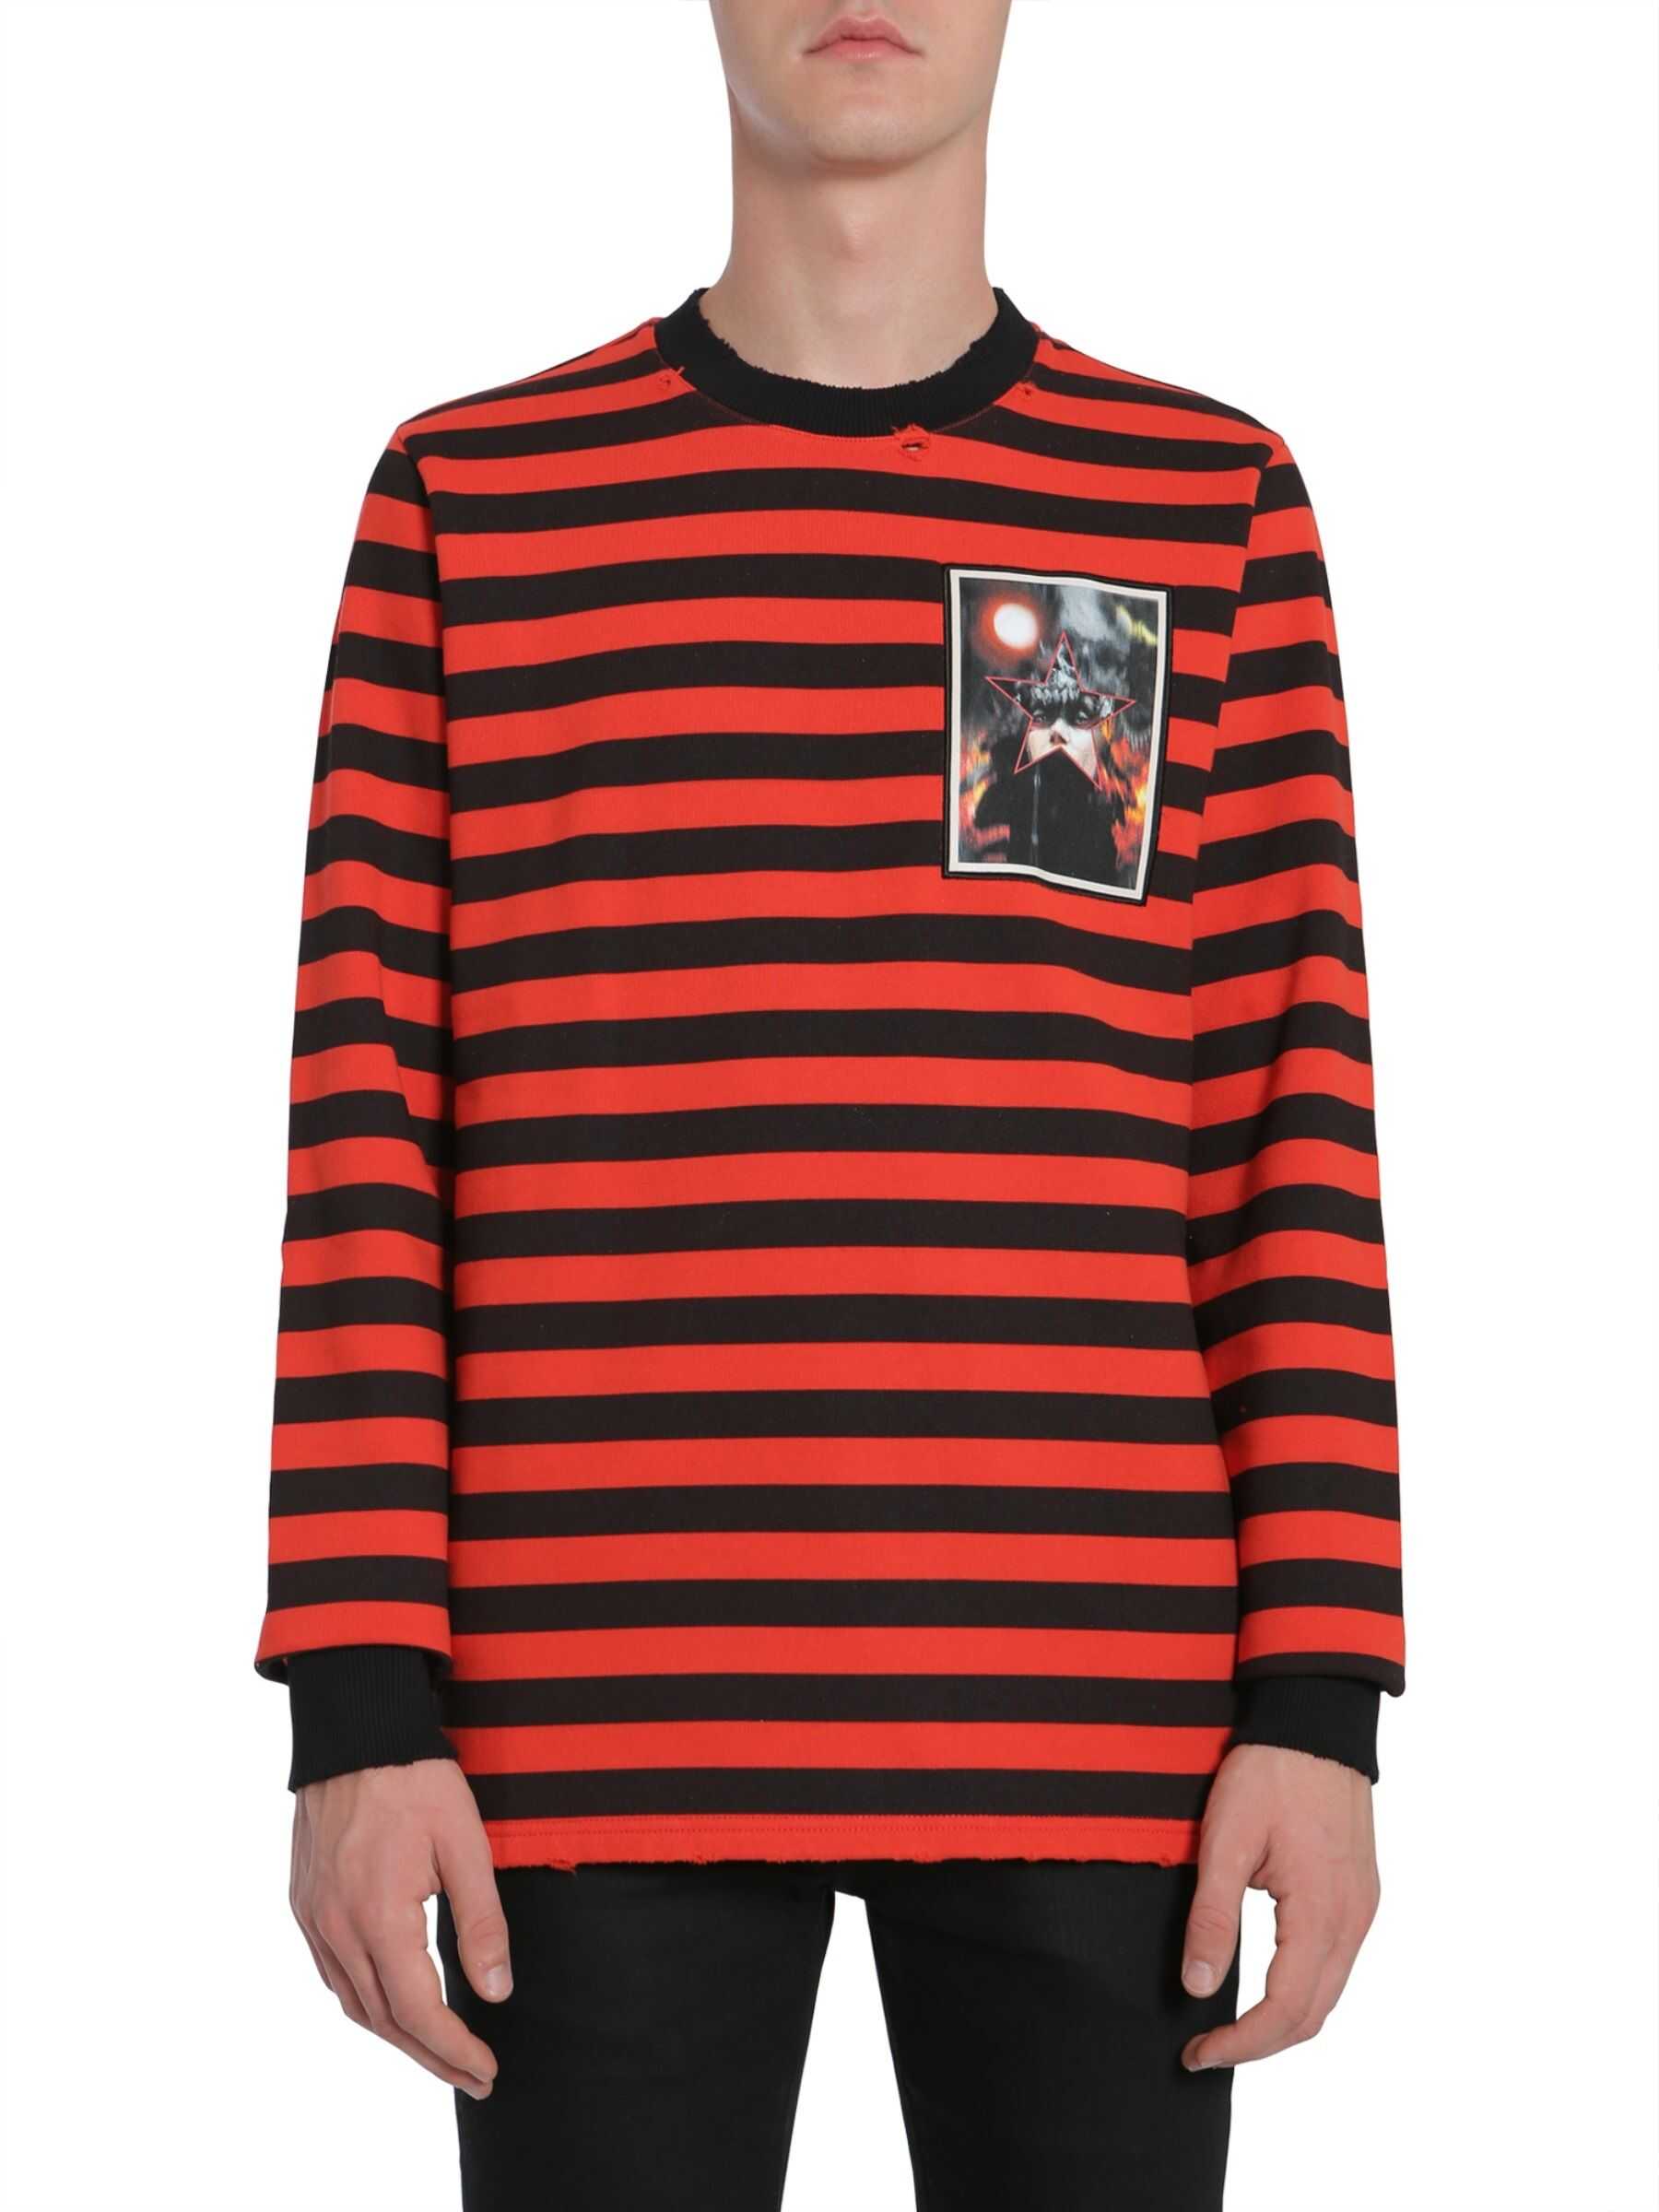 Givenchy Cuban Fit Sweatshirt 17W7175_560.001 BLACK